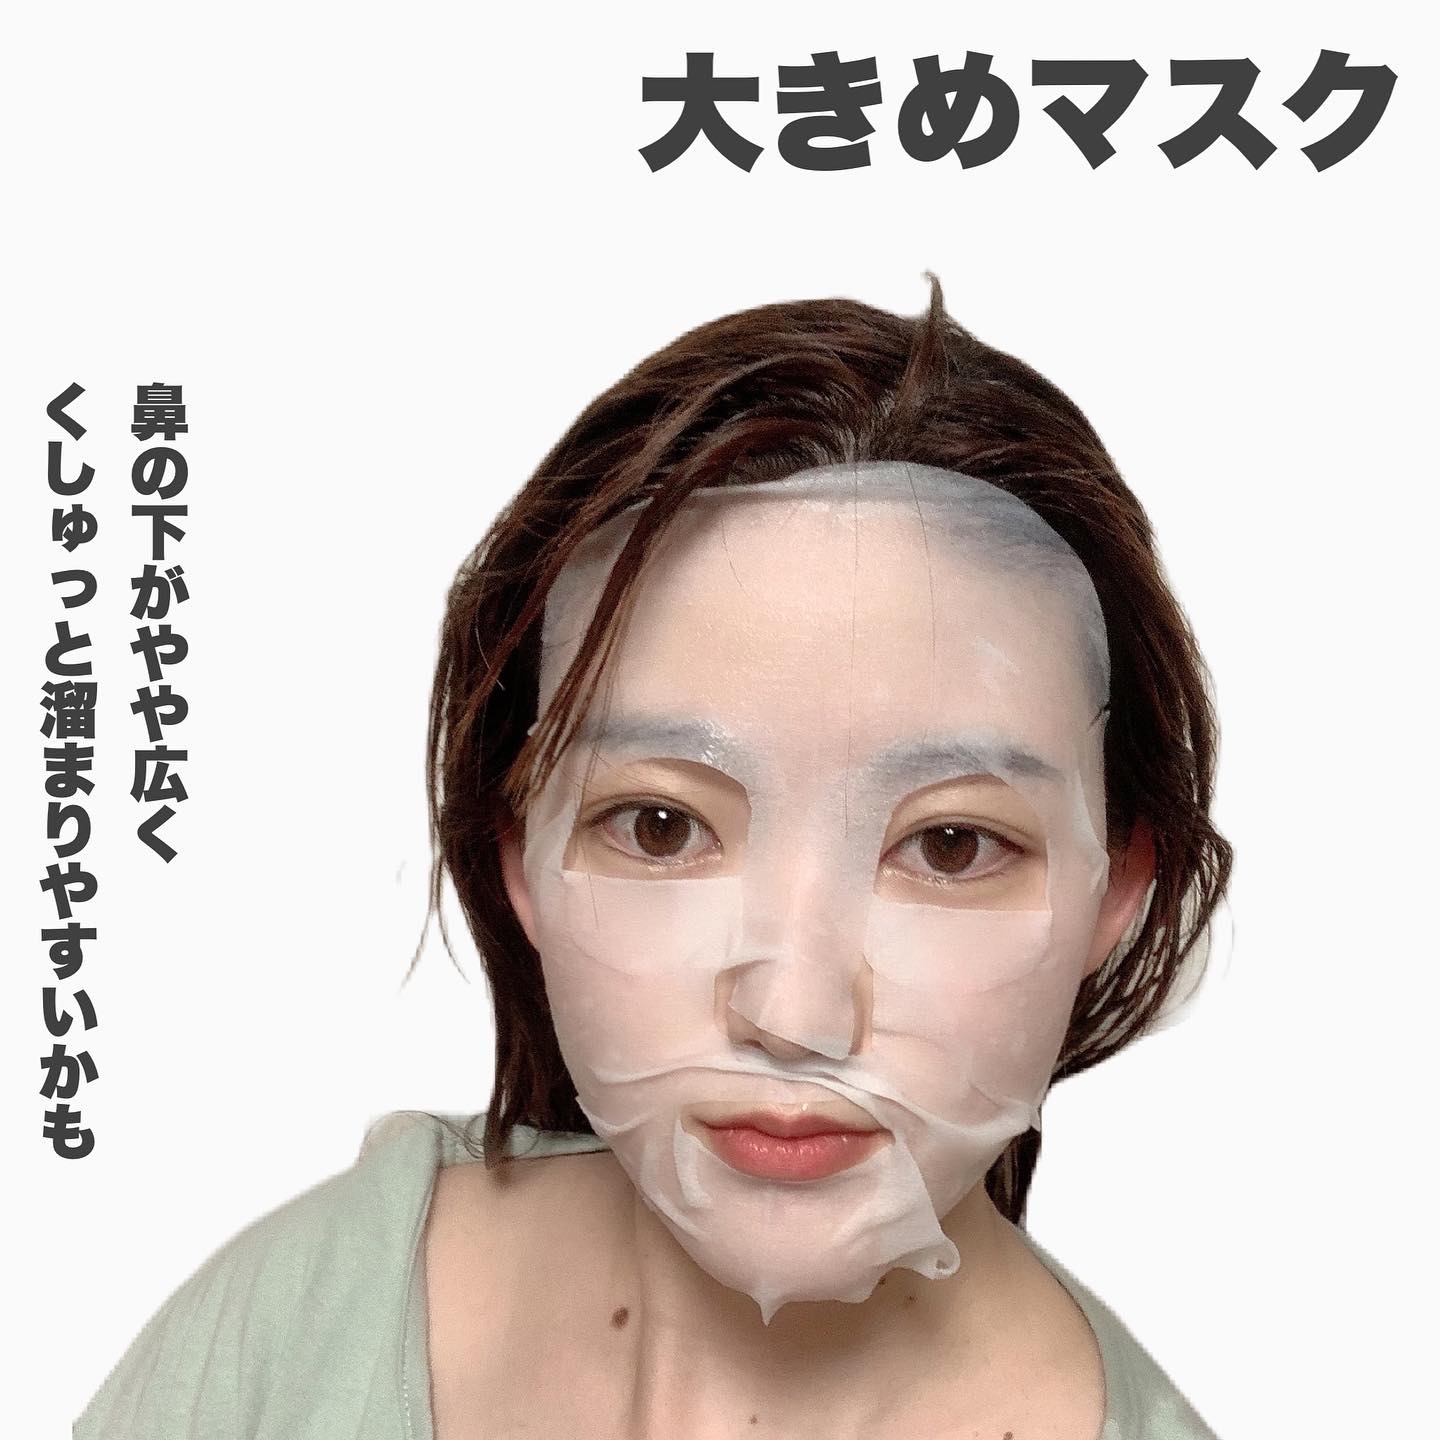 しまのや 琉球すっぽんコラーゲンフェイスマスクに関するまみやこさんの口コミ画像2